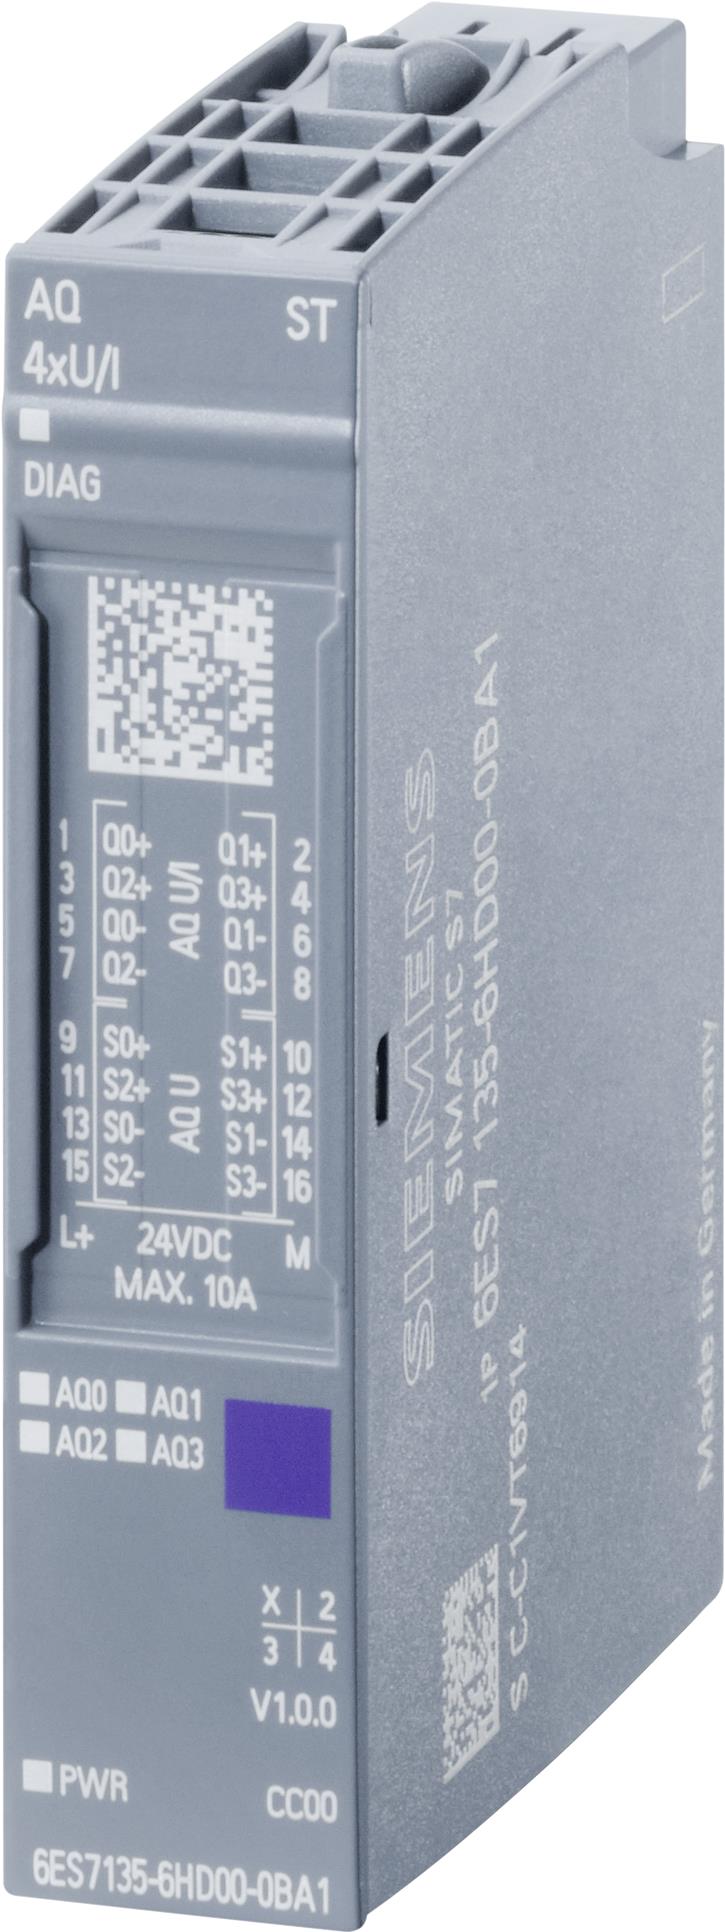 Siemens 6ES7135-6HD00-0BA1 Digital & Analog I/O Modul (6ES7135-6HD00-0BA1)